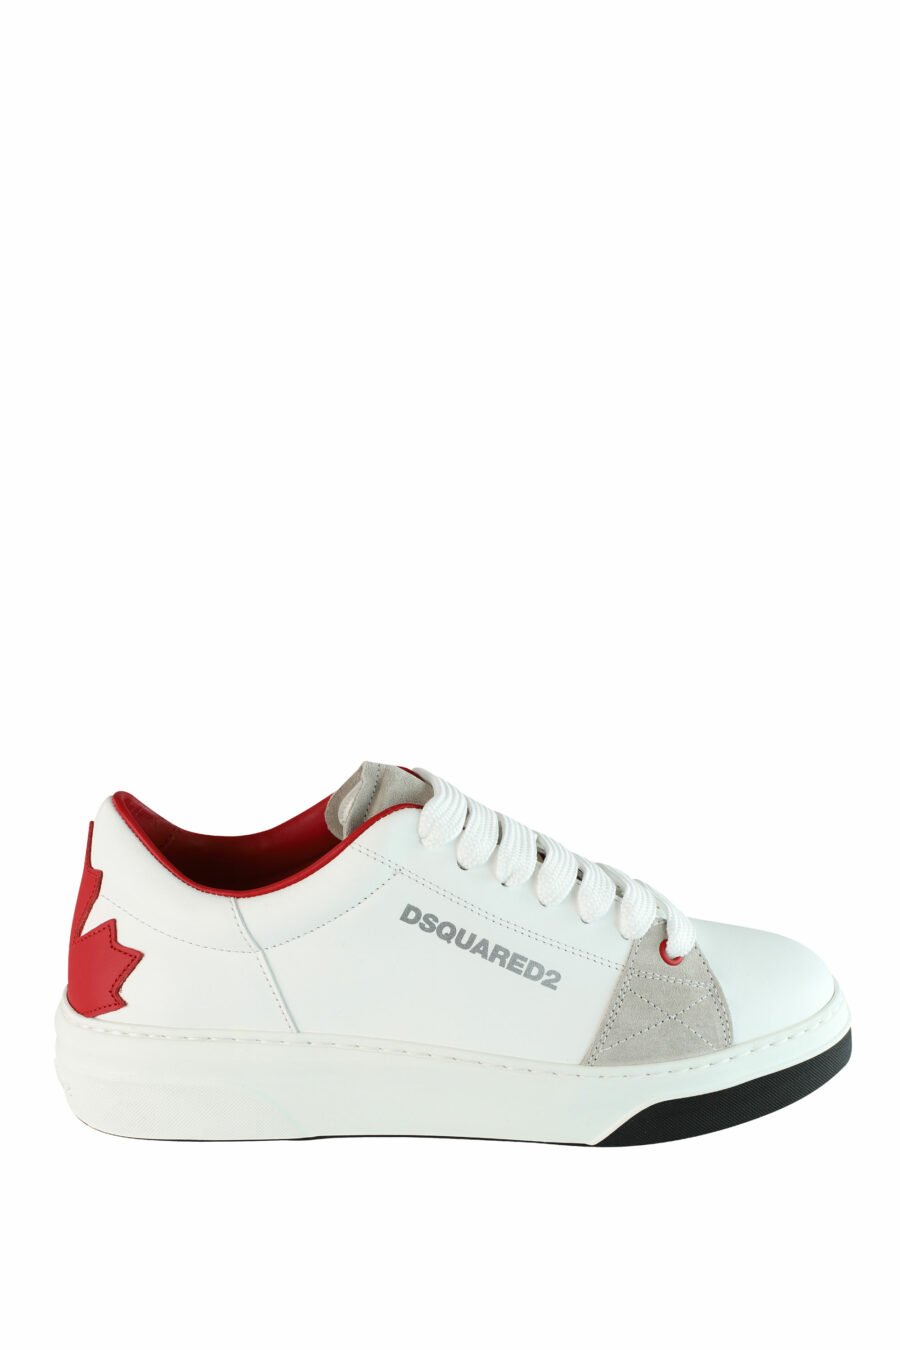 Zapatillas blancas con logo hoja roja y detalles beige - IMG 1435